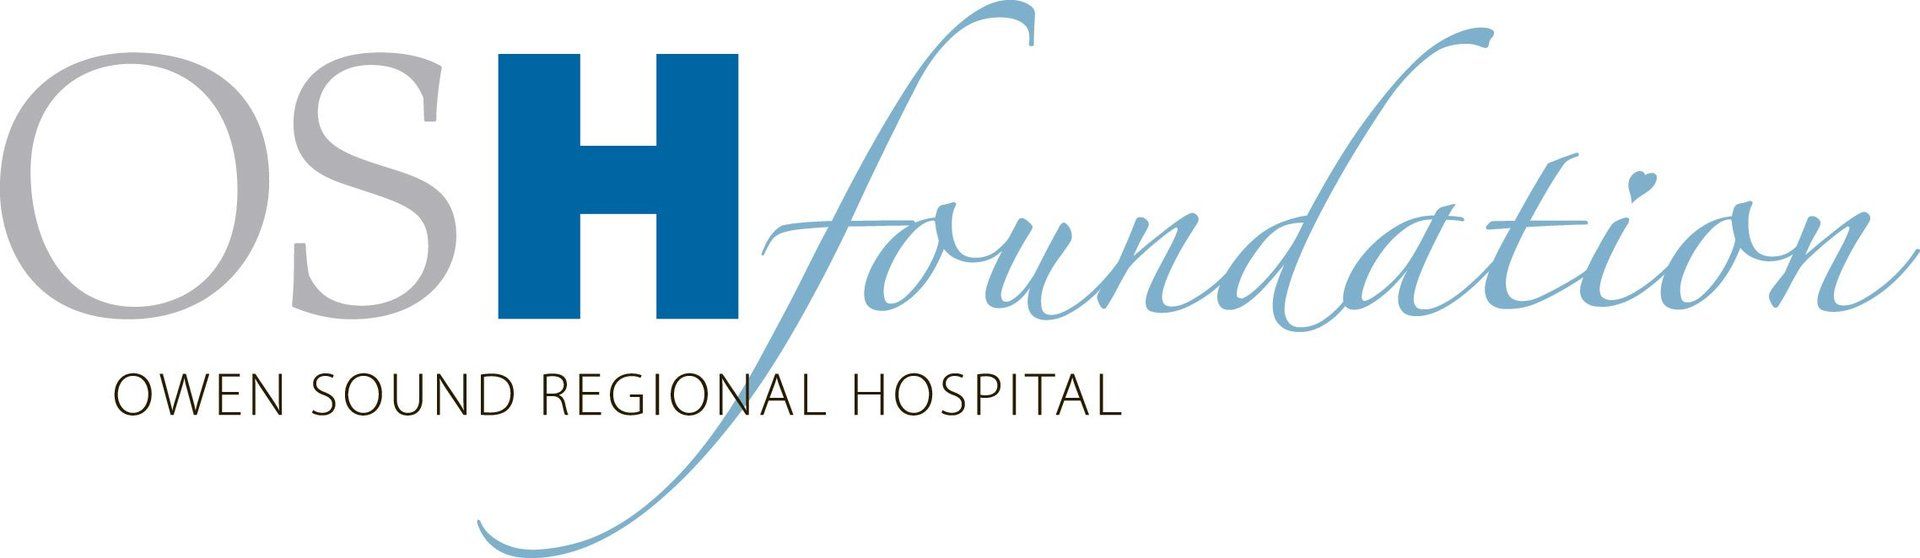 Owen Sound Regional Hospital Foundation